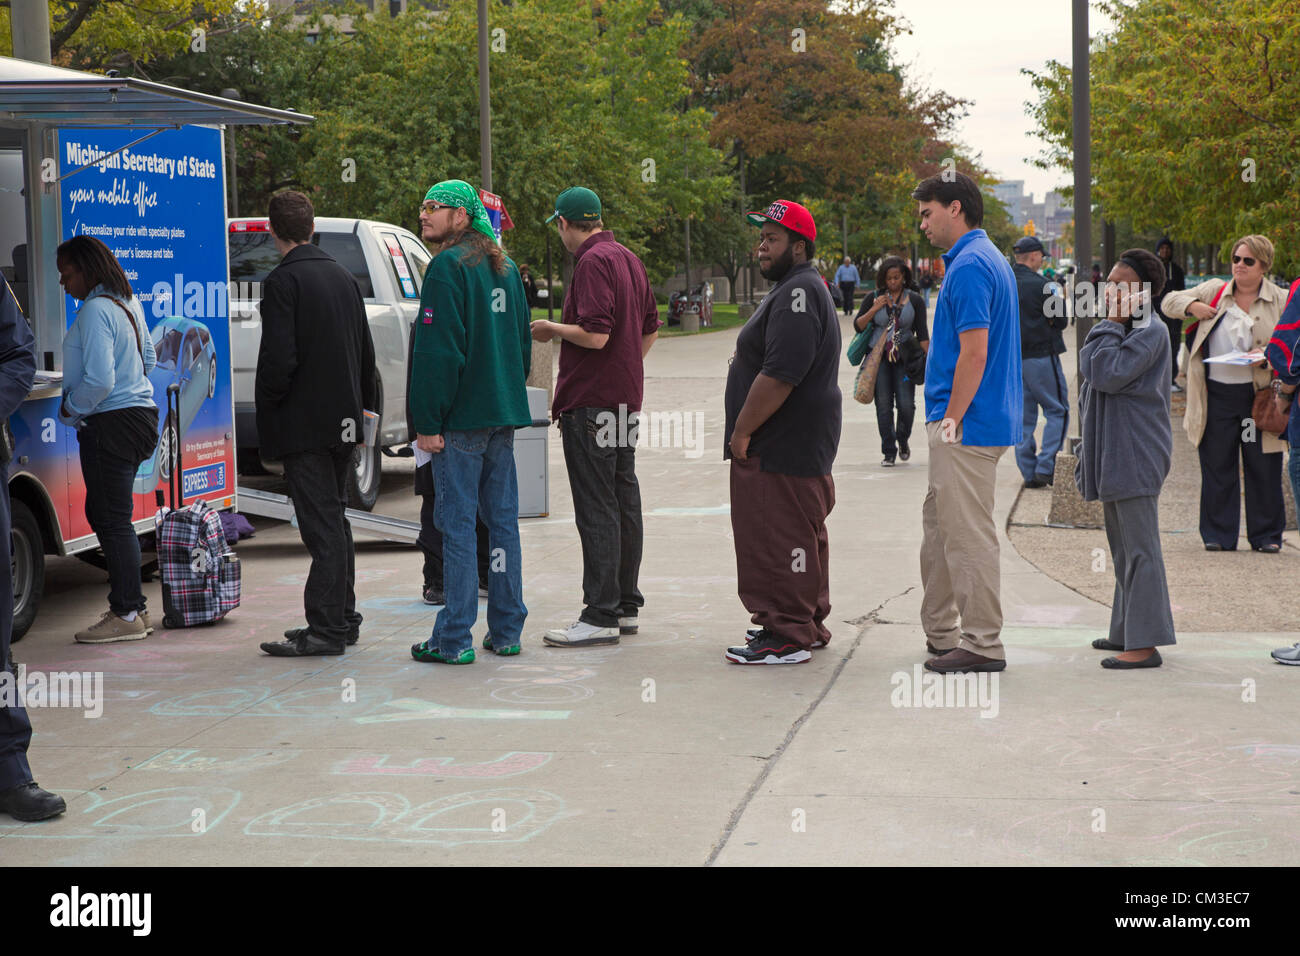 Detroit, Michigan - Studenti presso la Wayne State University la linea fino a registrarsi per votare nel novembre 2012 elezioni presidenziali. La campagna di registrazione è stato sponsorizzato dalla Michigan il Segretario di Stato e il NAACP Michigan. Foto Stock